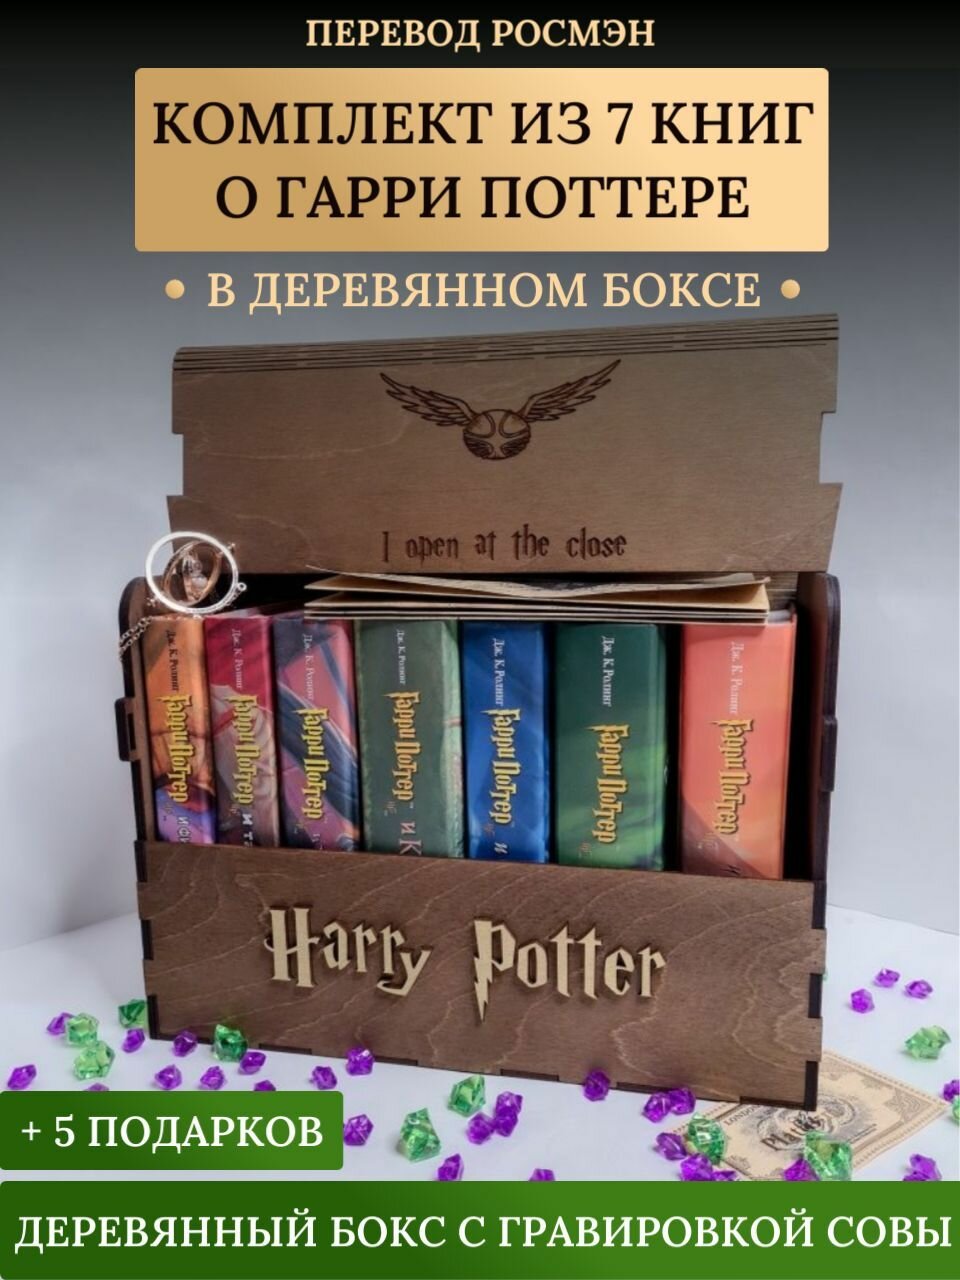 Книги Гарри Поттер Росмэн. Комплект 7 книг в сундуке (дуб) + 5 подарков (Роулинг Д. К.)